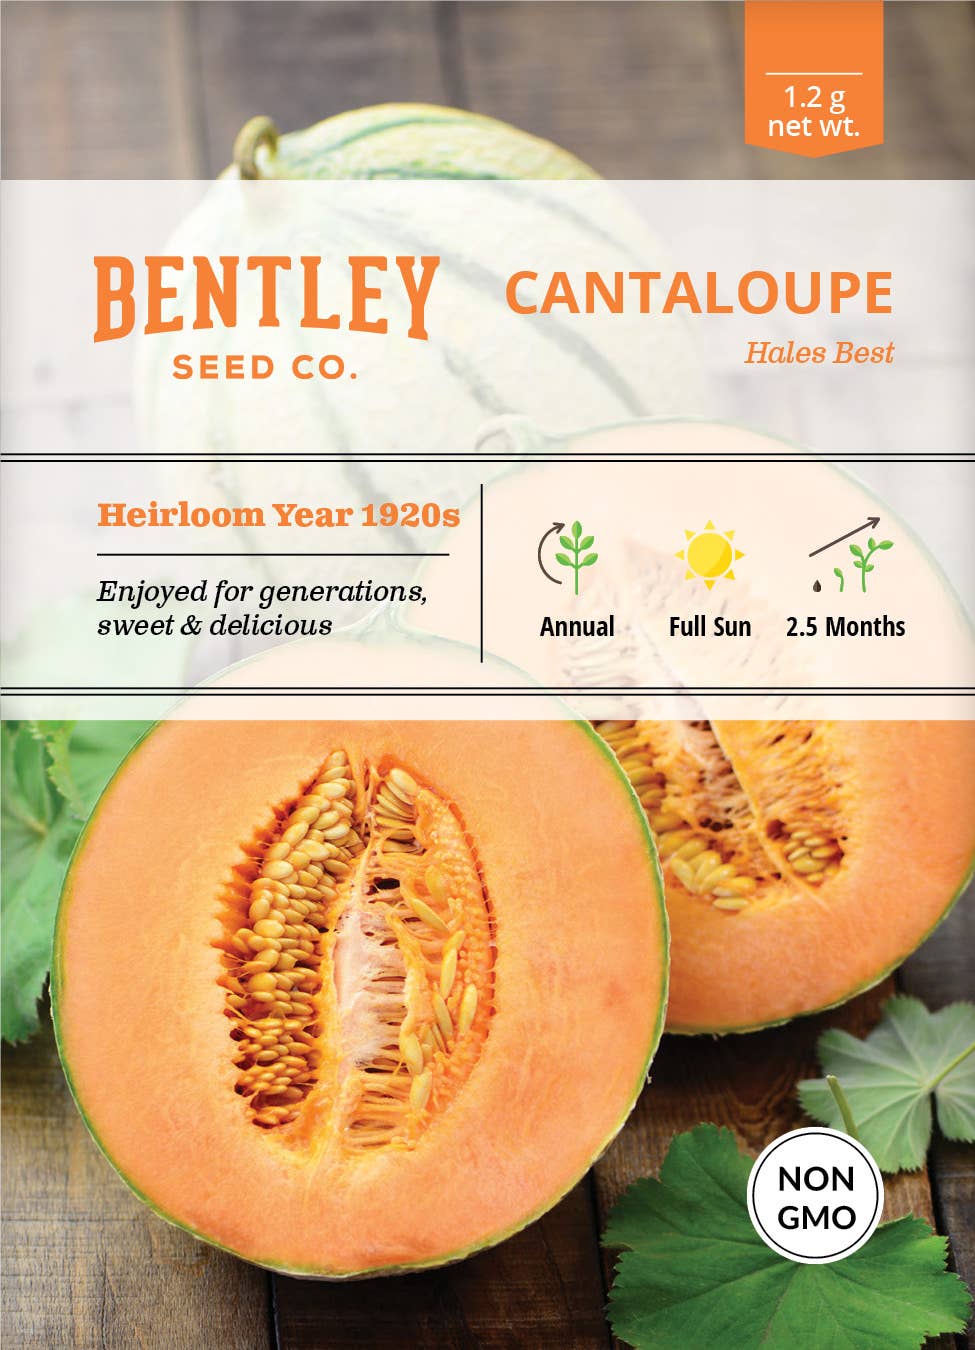 Bentley Seed Co. - Cantaloupe Hale's Best Jumbo